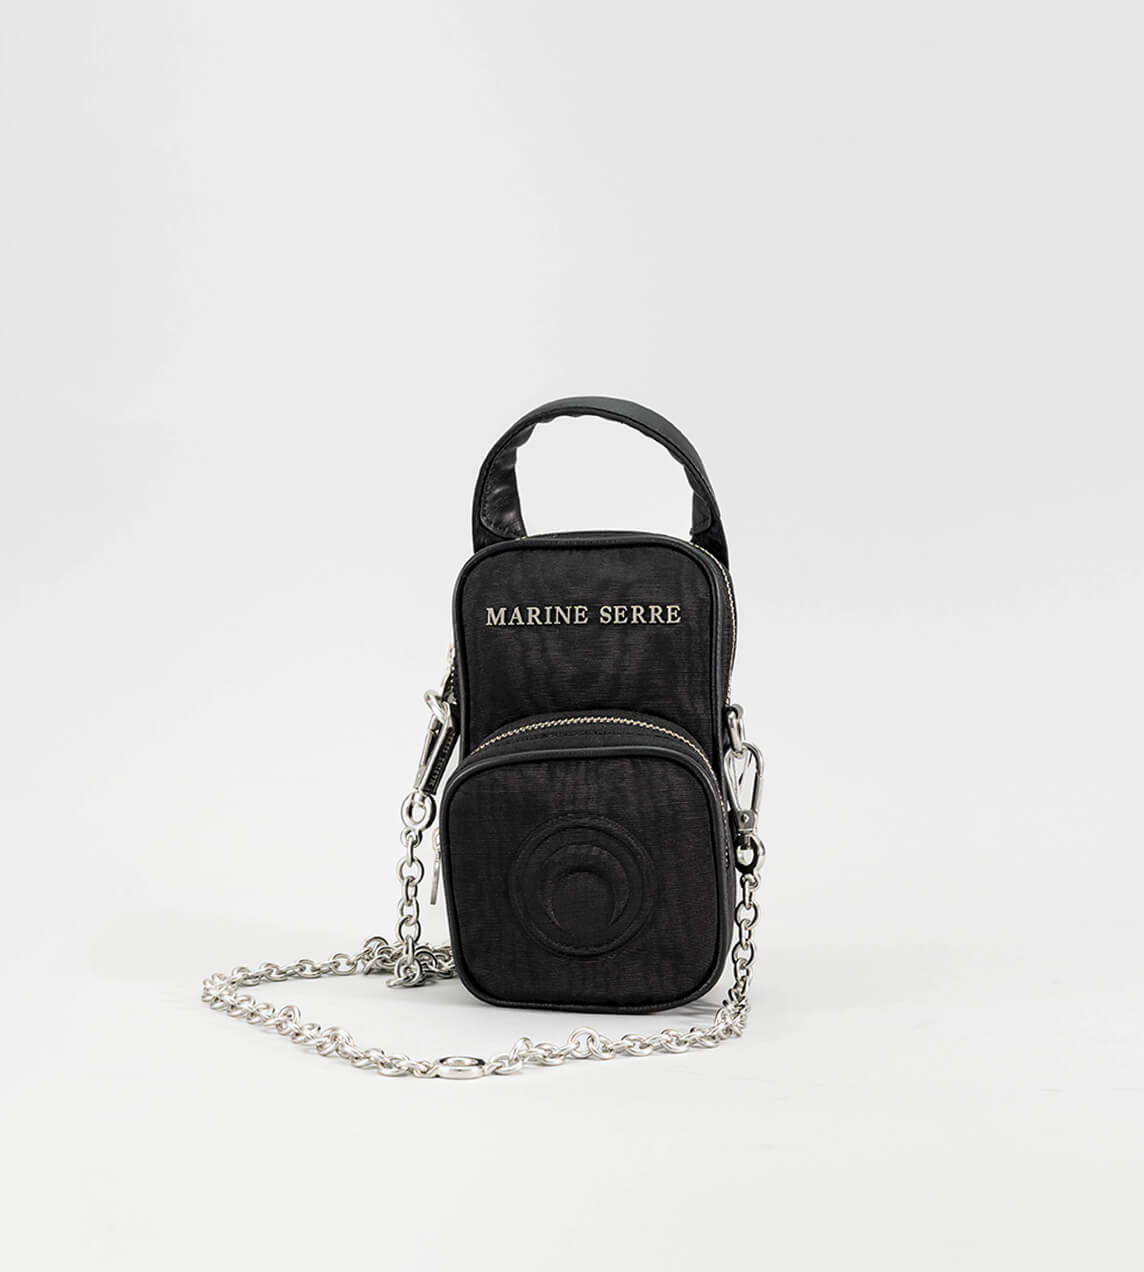 Marine Serre - Parpaing Moire Bag Black